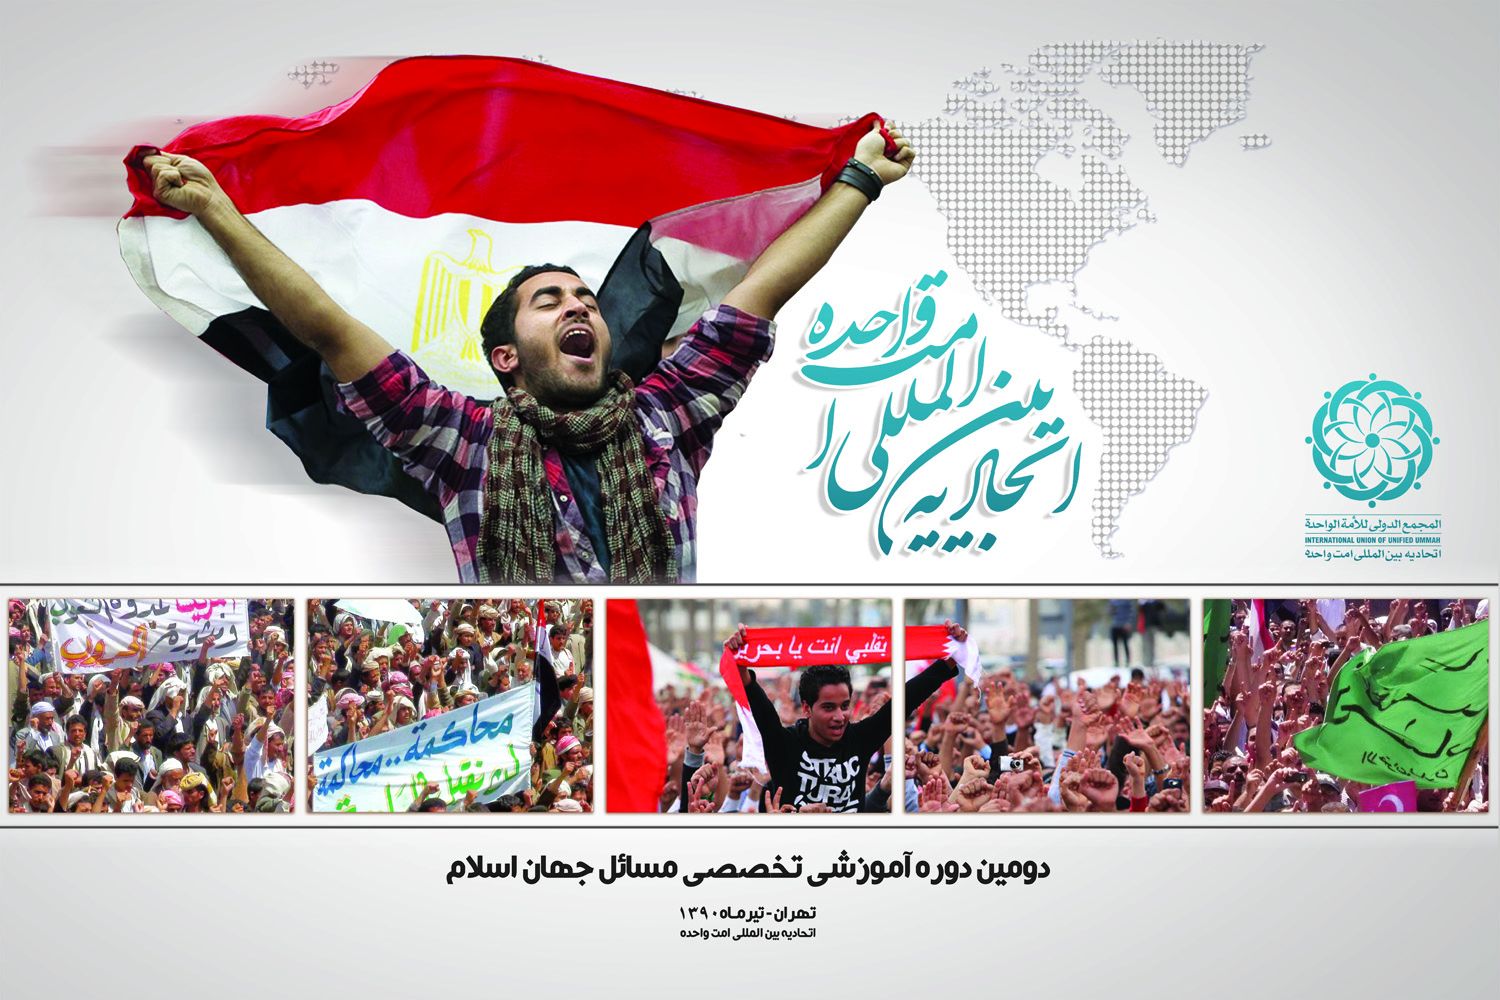 فردا؛

دو جوان انقلابی مصر در دوره آموزشی امت واحده حاضر میشوند